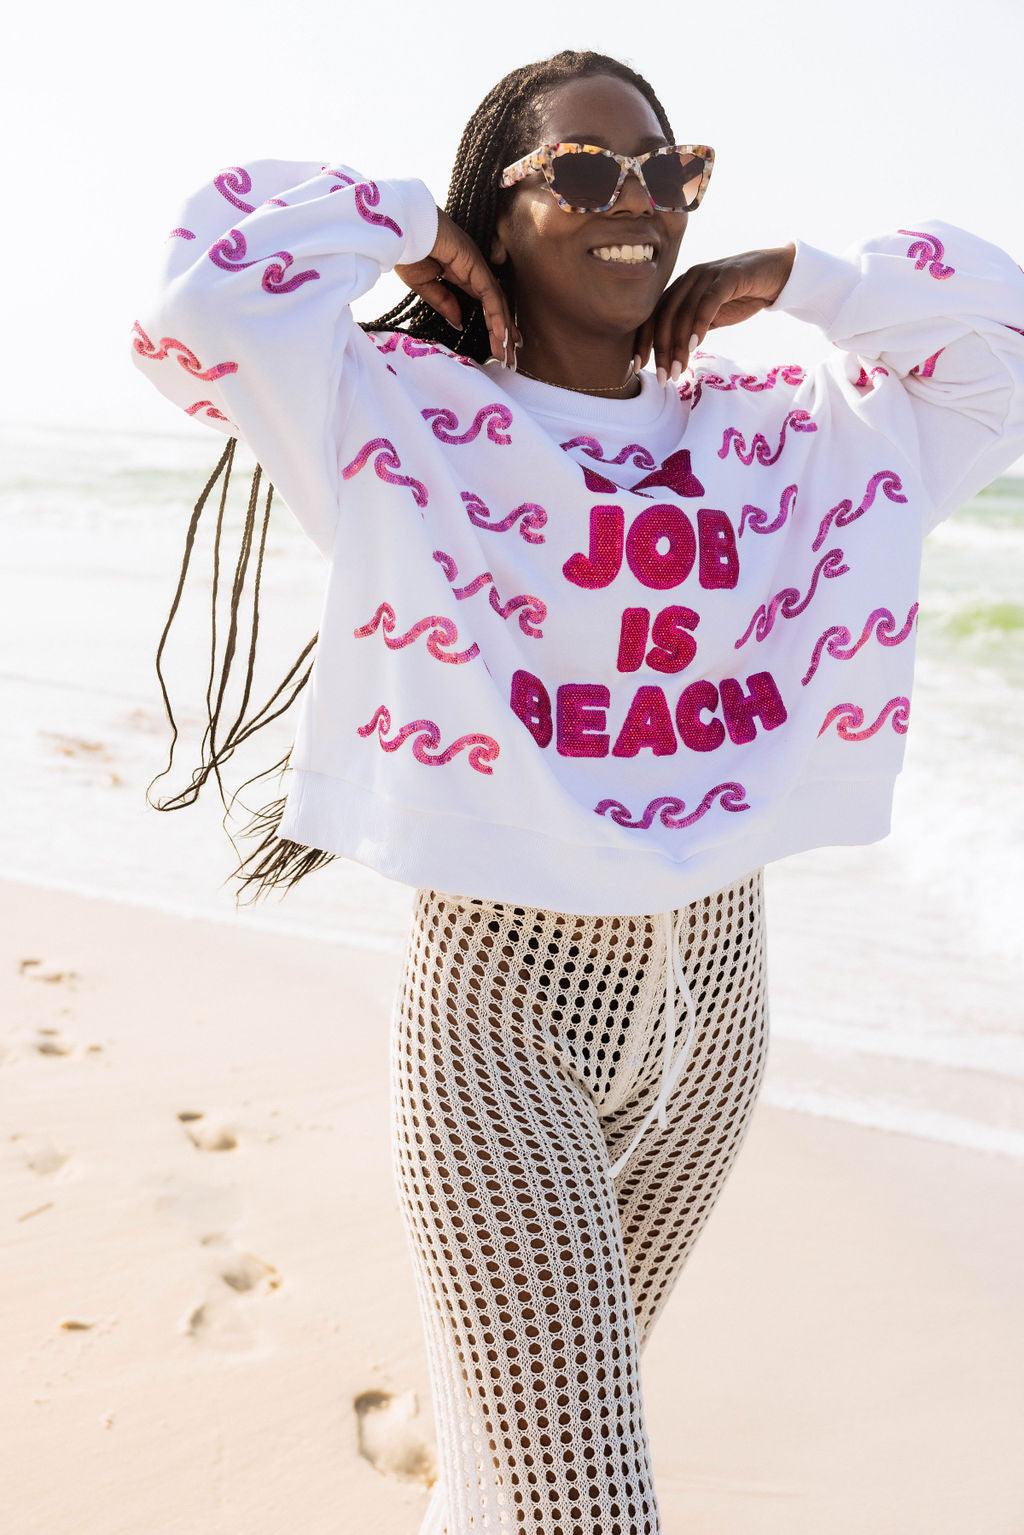 White 'My Job Is Beach' Sweatshirt